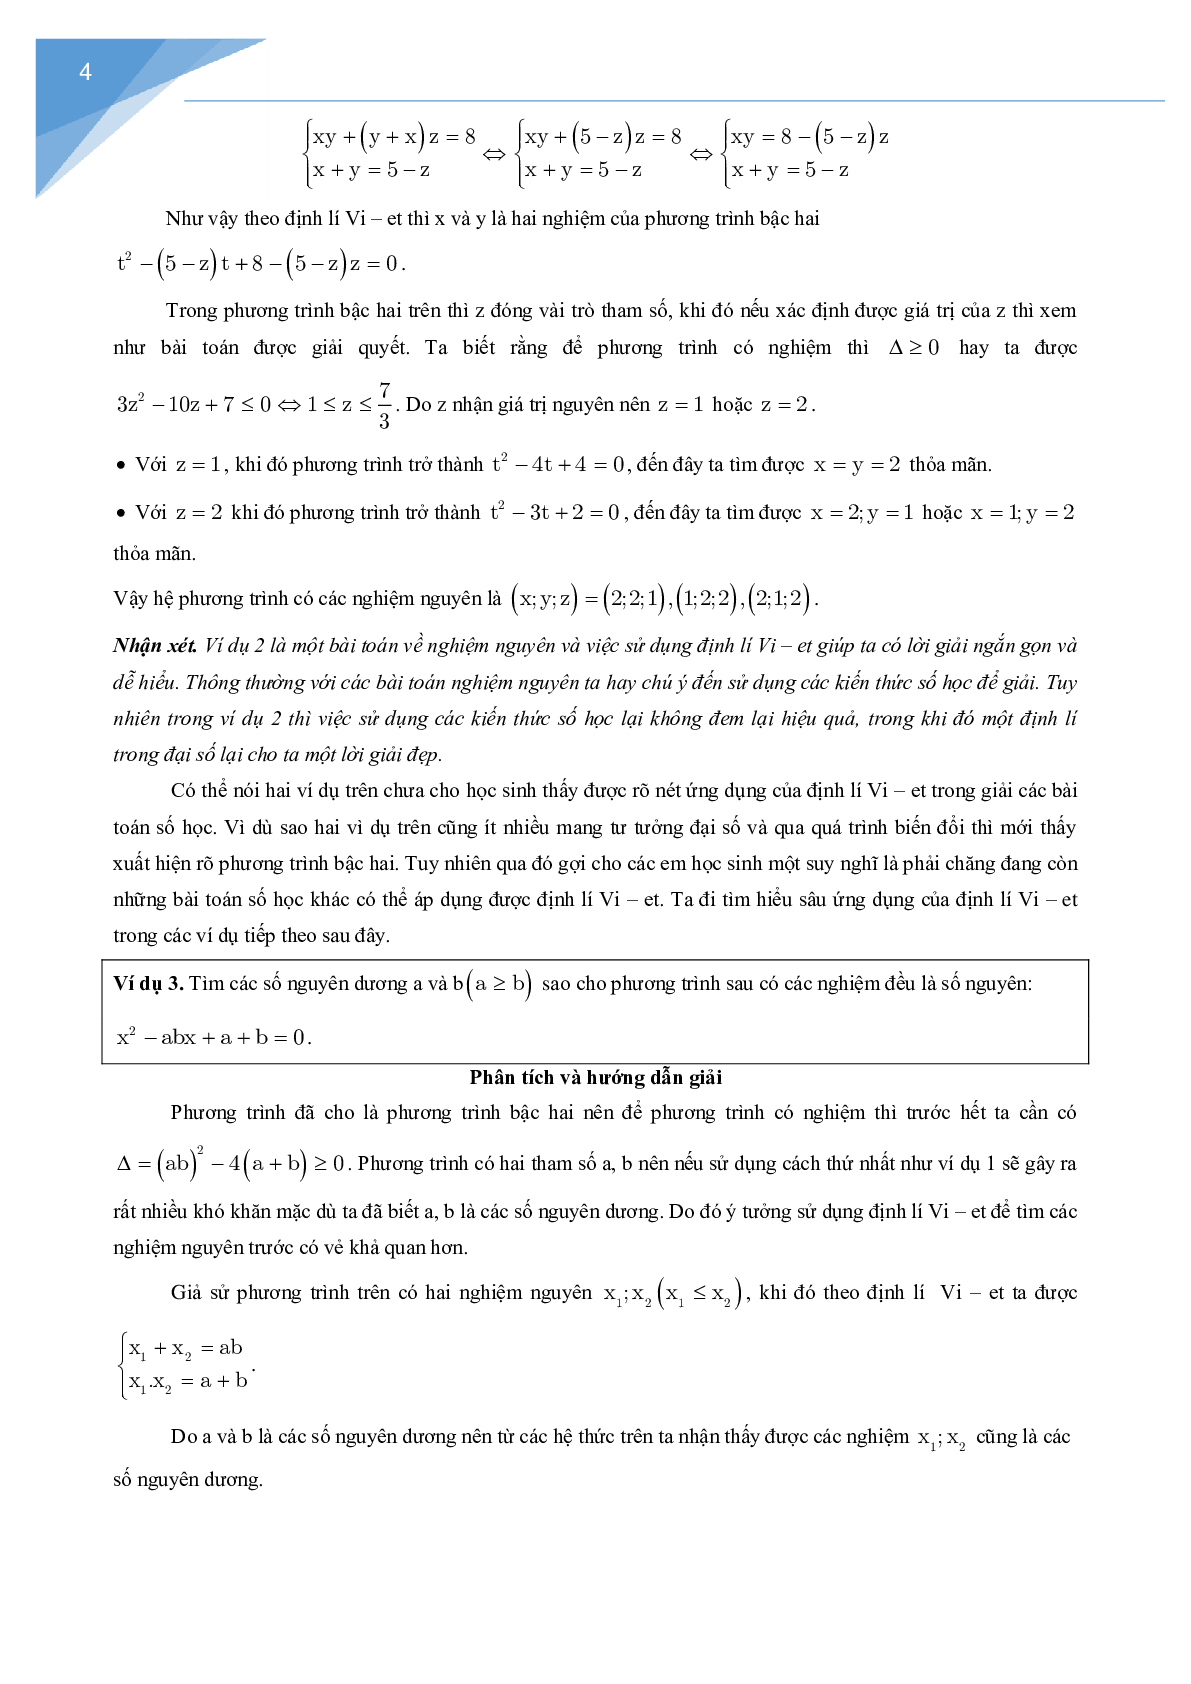 Vận dụng định lý Vi-et giải một số bài toán số học (trang 4)